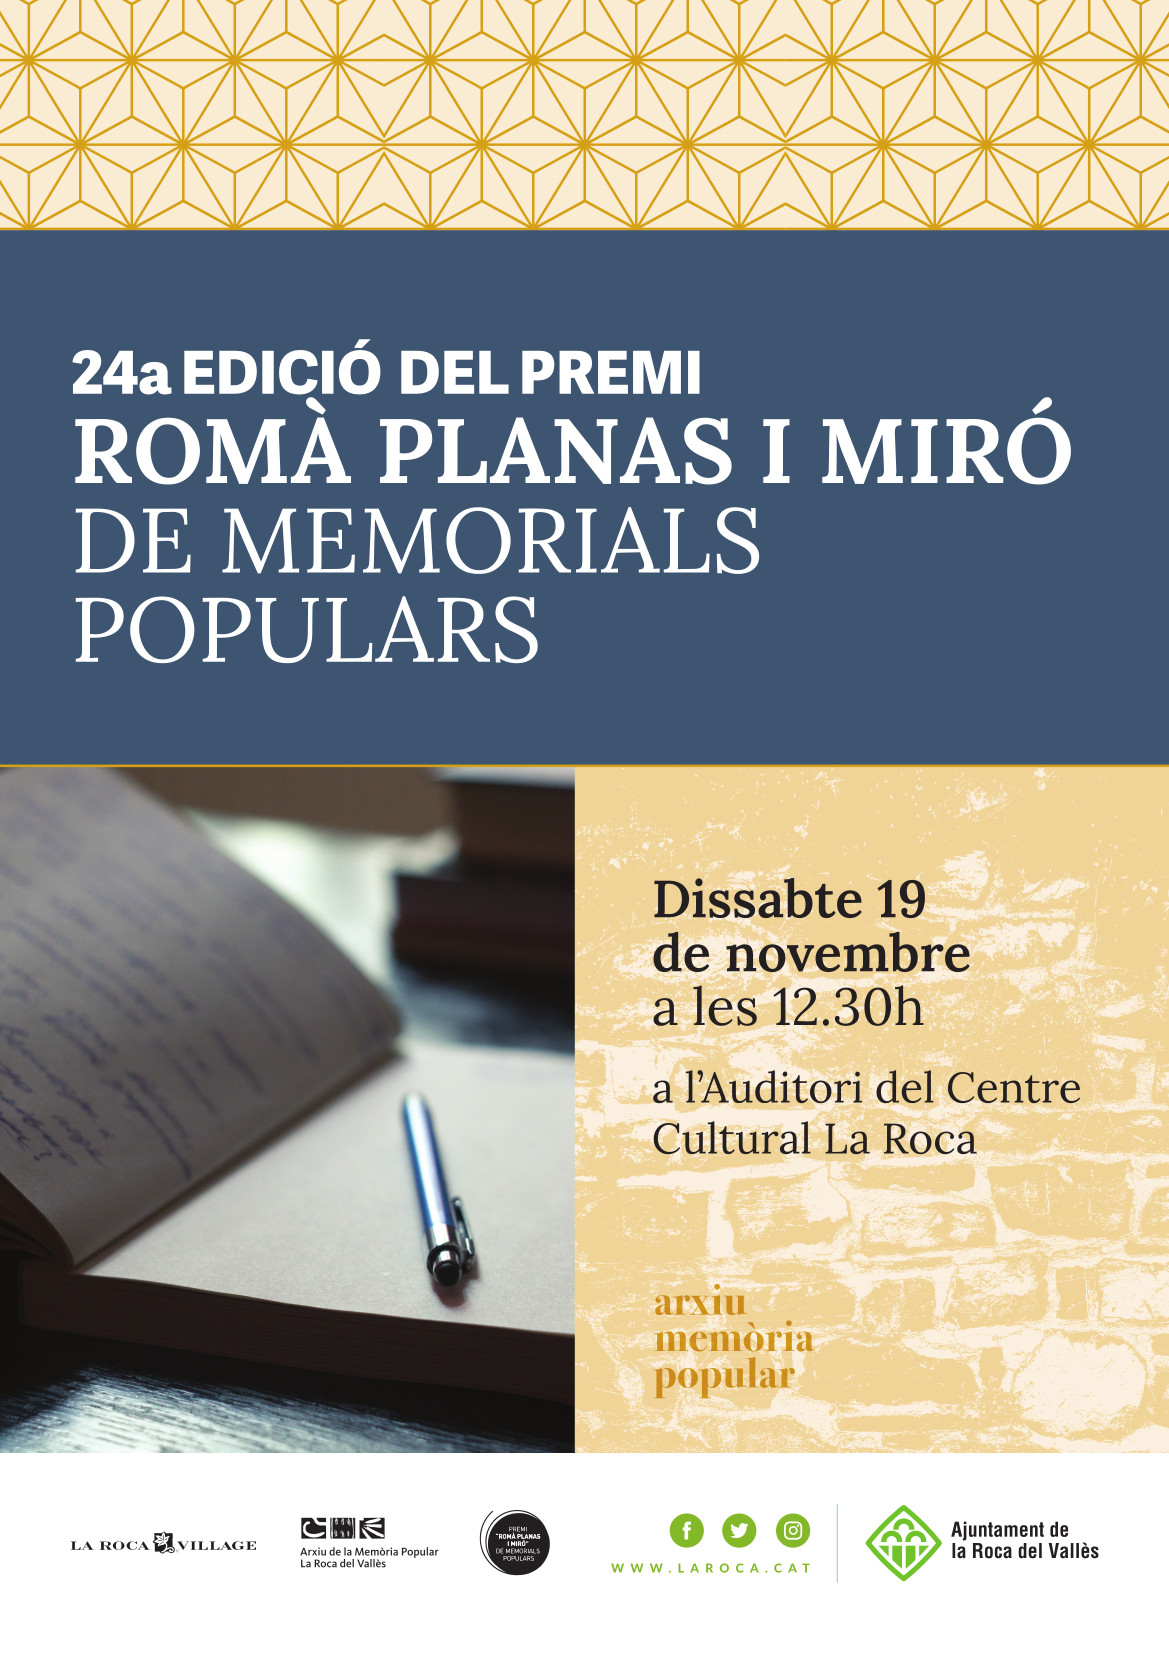 24a edició Romà Planas i Miró